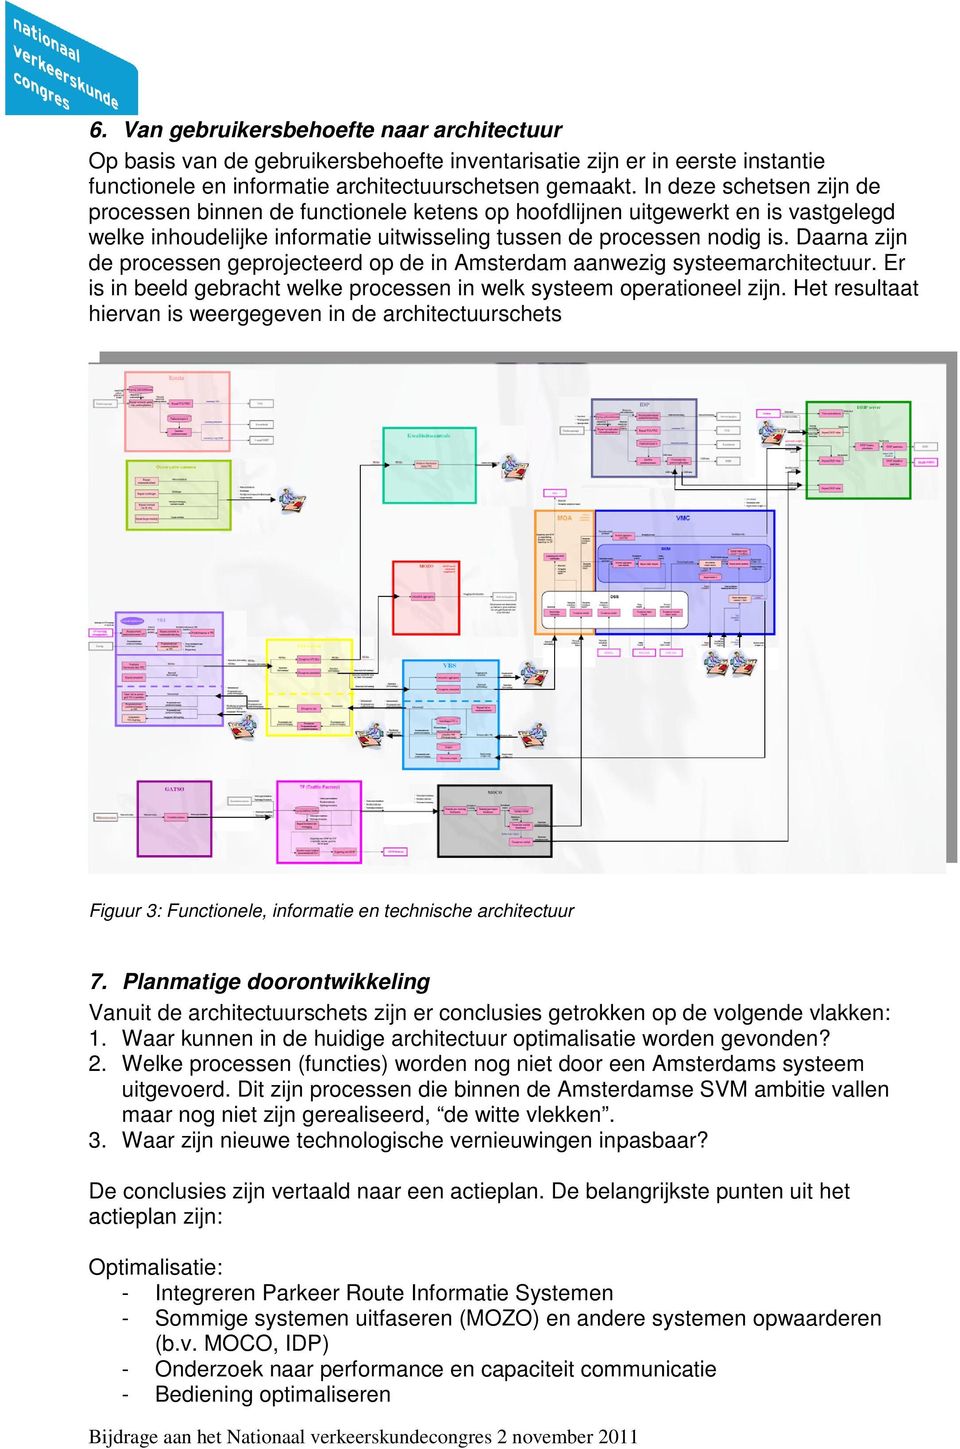 Daarna zijn de processen geprojecteerd op de in Amsterdam aanwezig systeemarchitectuur. Er is in beeld gebracht welke processen in welk systeem operationeel zijn.